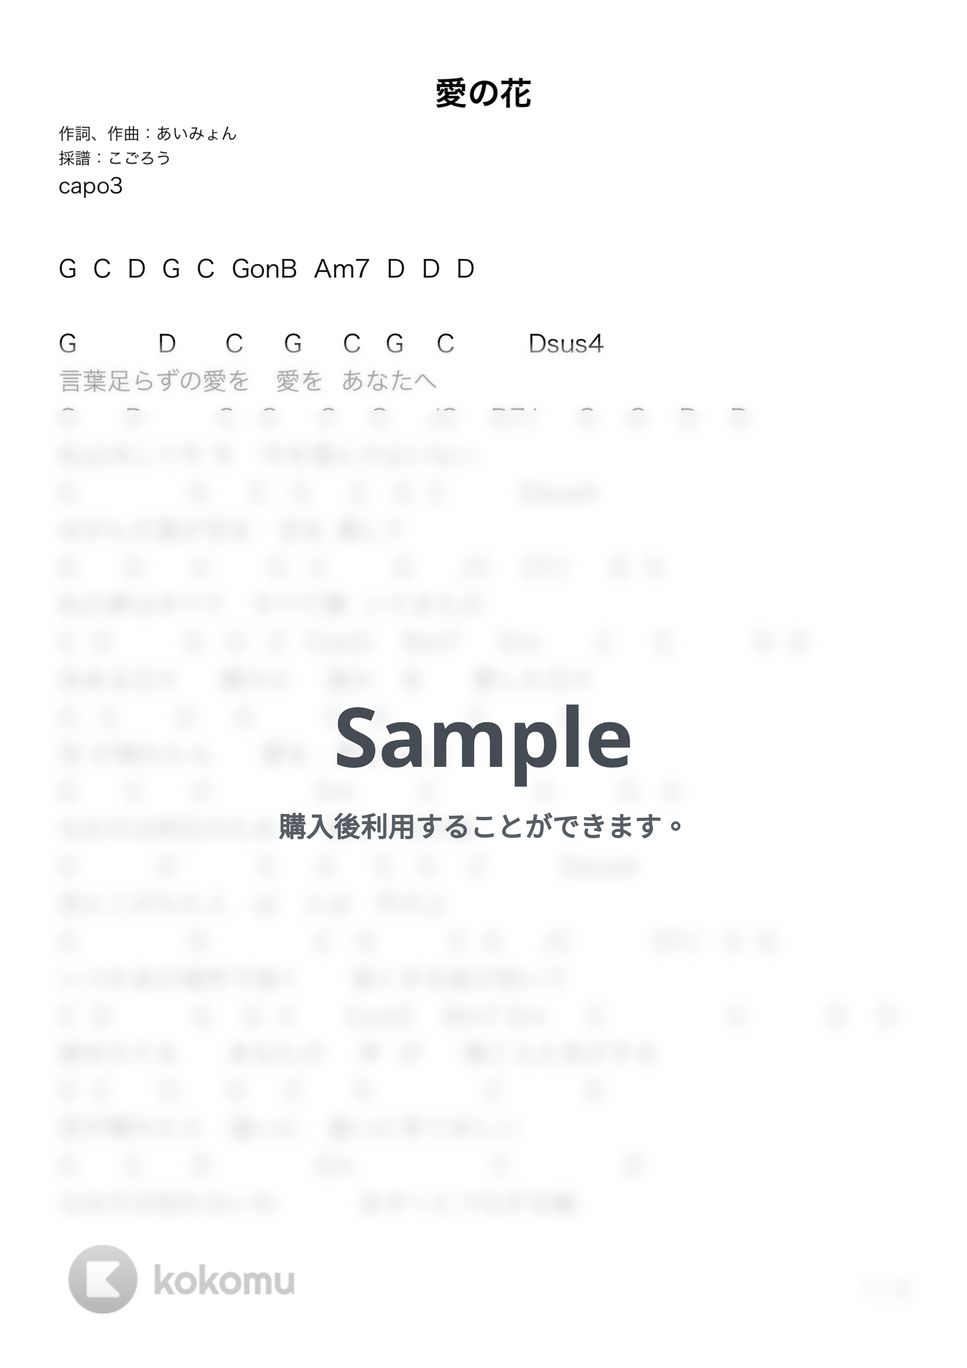 あいみょん - 愛の花 (ギター弾き語り) by G's score